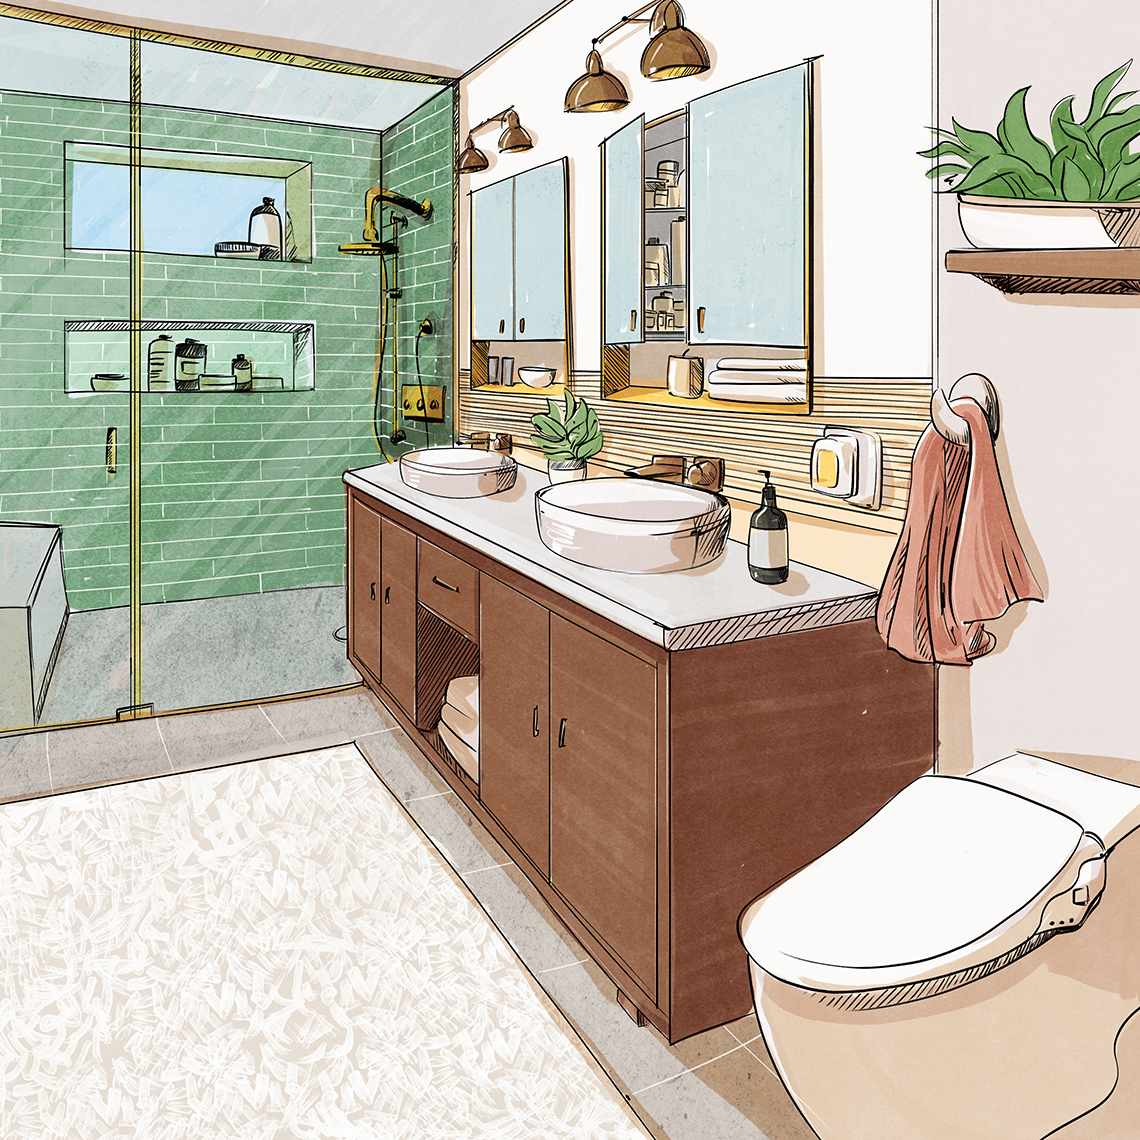 Boceto de diseño de un baño terminado